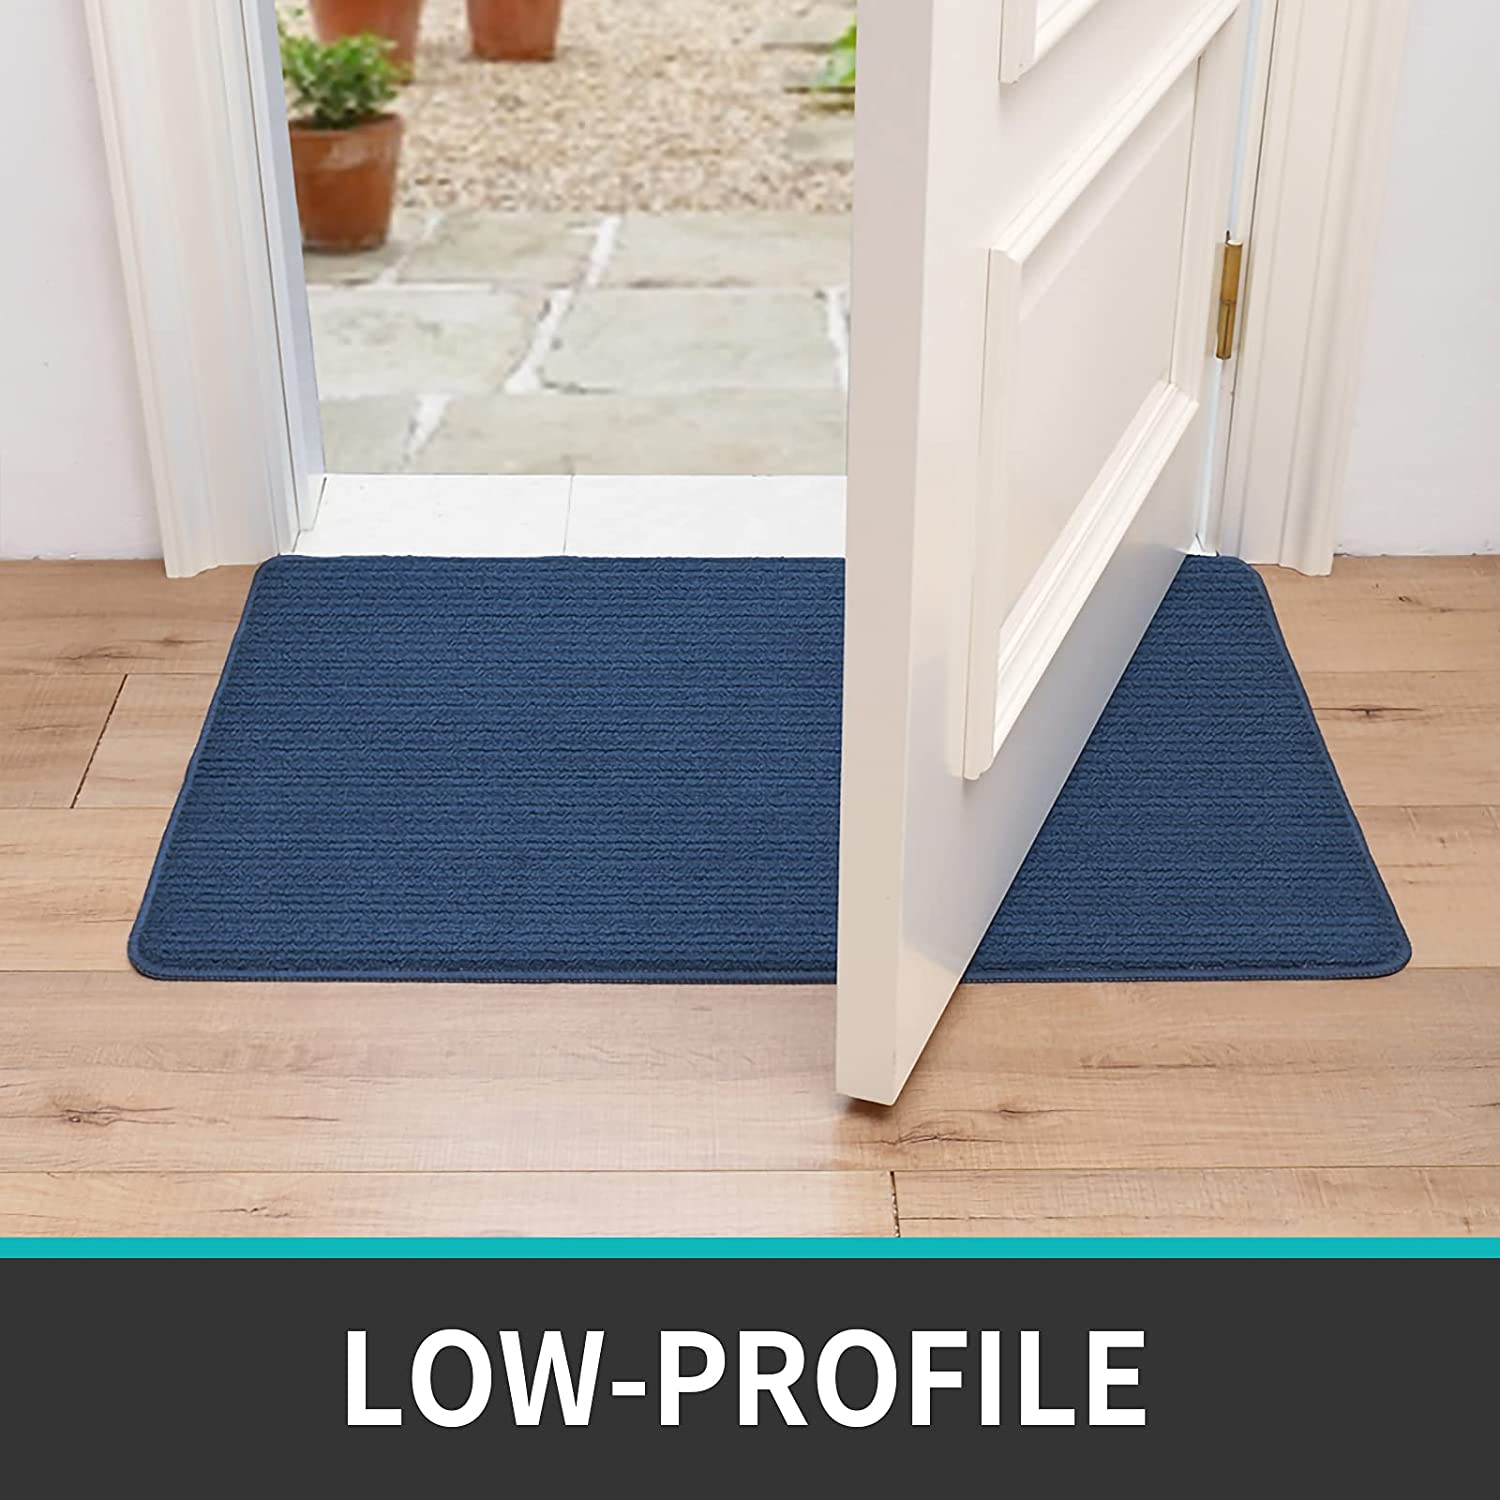 DEXI Door Mat Indoor Doormat Rug Inside Entryway Rugs Non-Slip Low